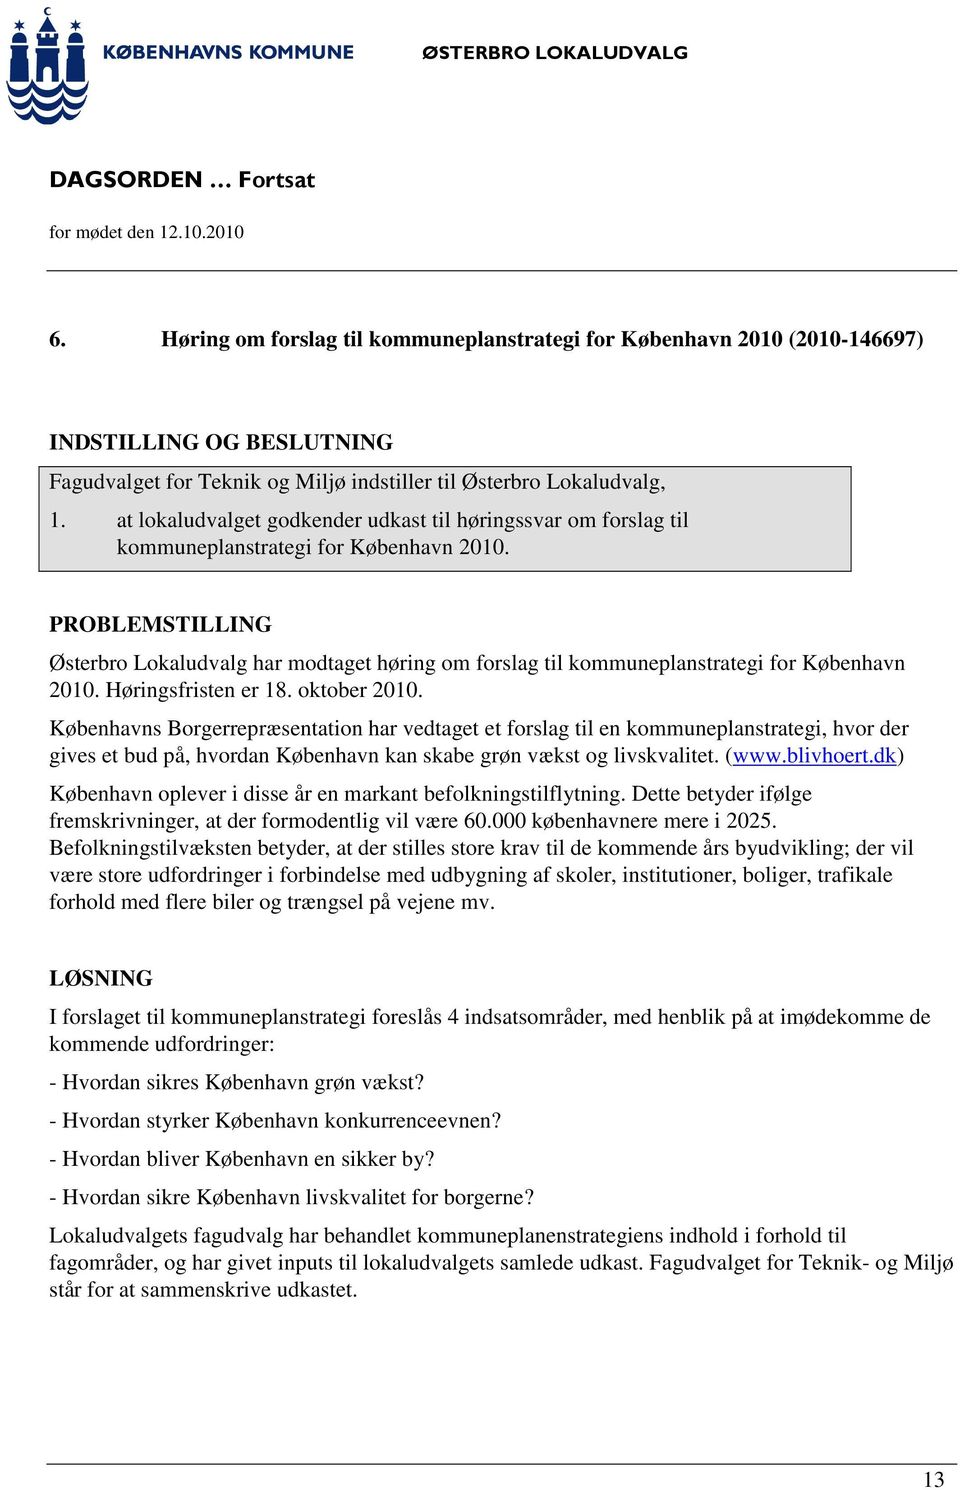 PROBLEMSTILLING Østerbro Lokaludvalg har modtaget høring om forslag til kommuneplanstrategi for København 2010. Høringsfristen er 18. oktober 2010.